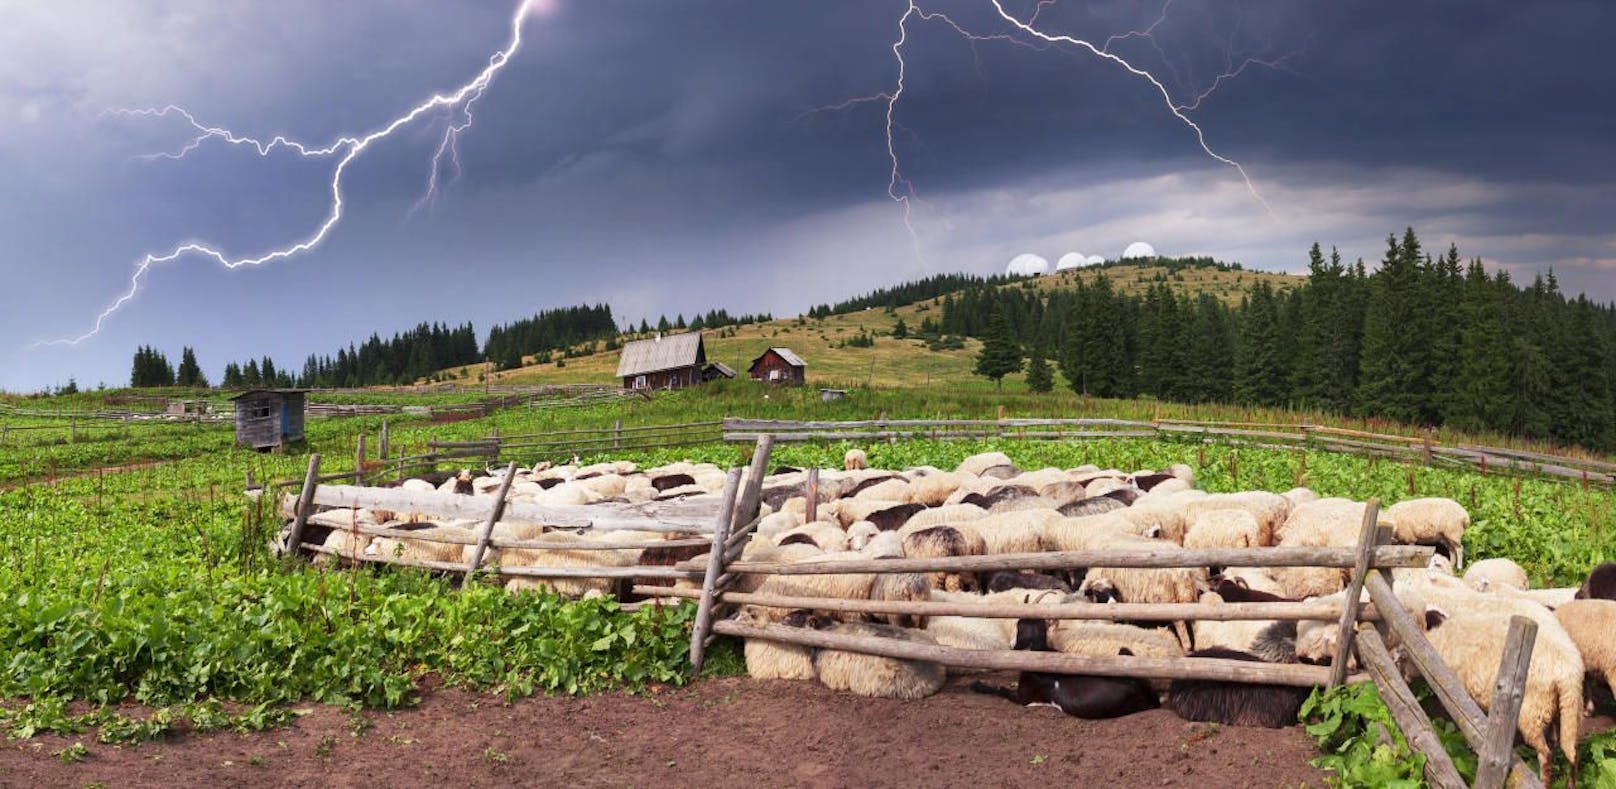 Die Schafe sind bei einem Blitzeinschlag ums Leben gekommen